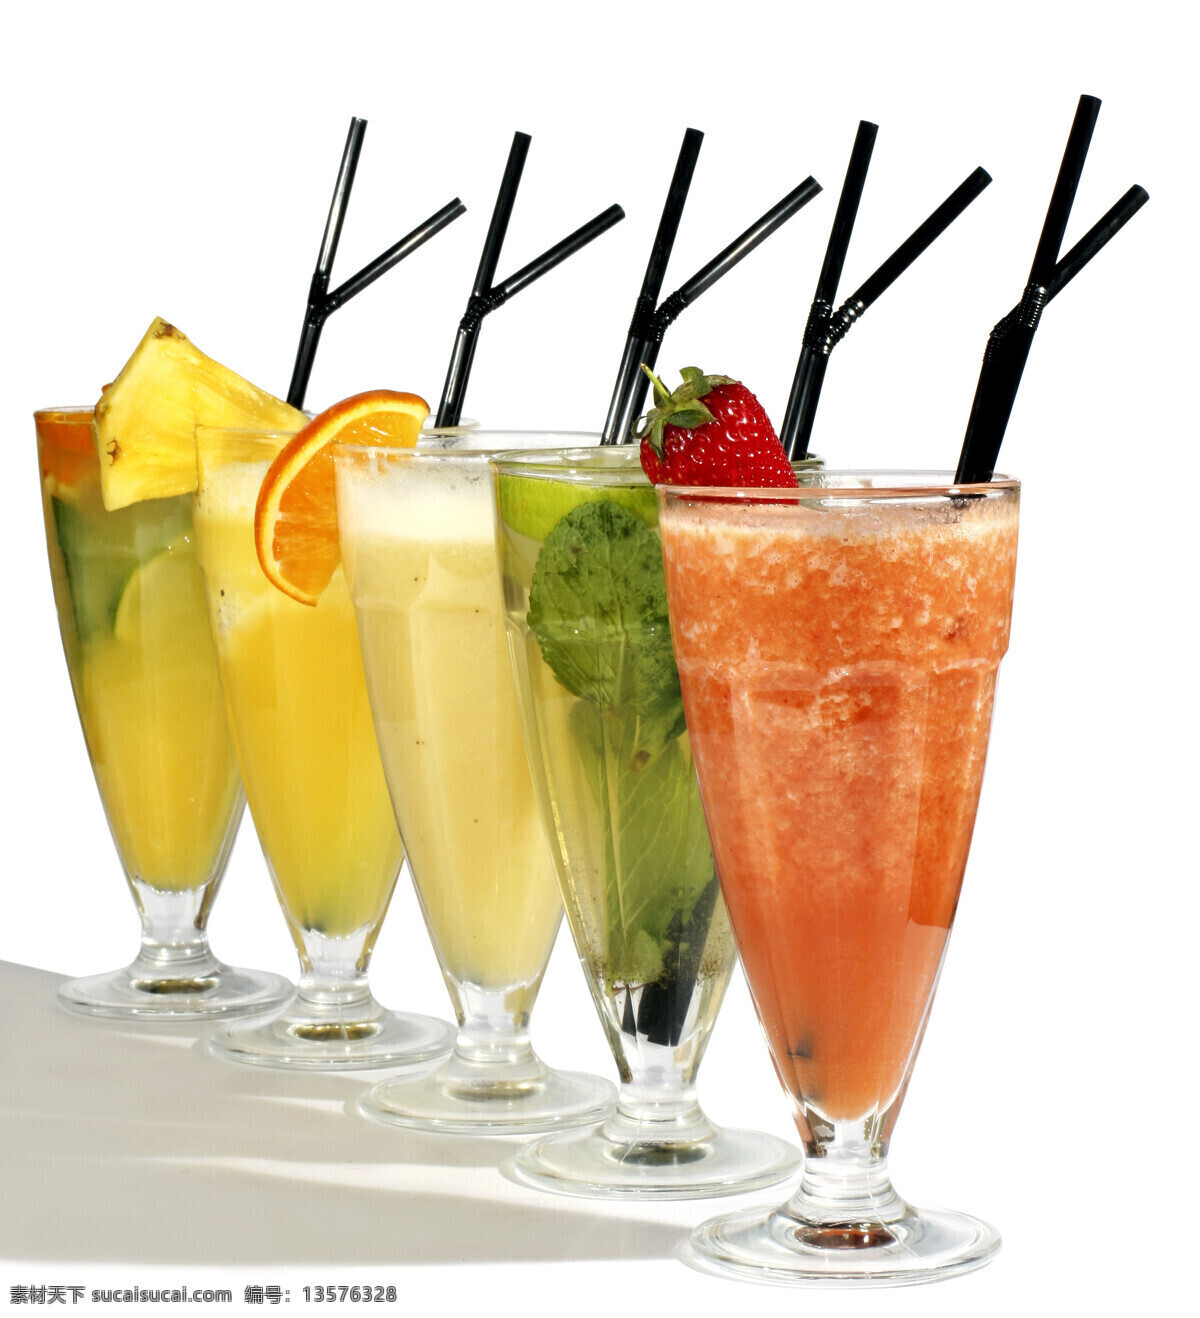 鲜 果汁 吸管 玻璃杯 酒杯 水果 草莓 柠檬 波罗 酒水饮料 酒类图片 餐饮美食